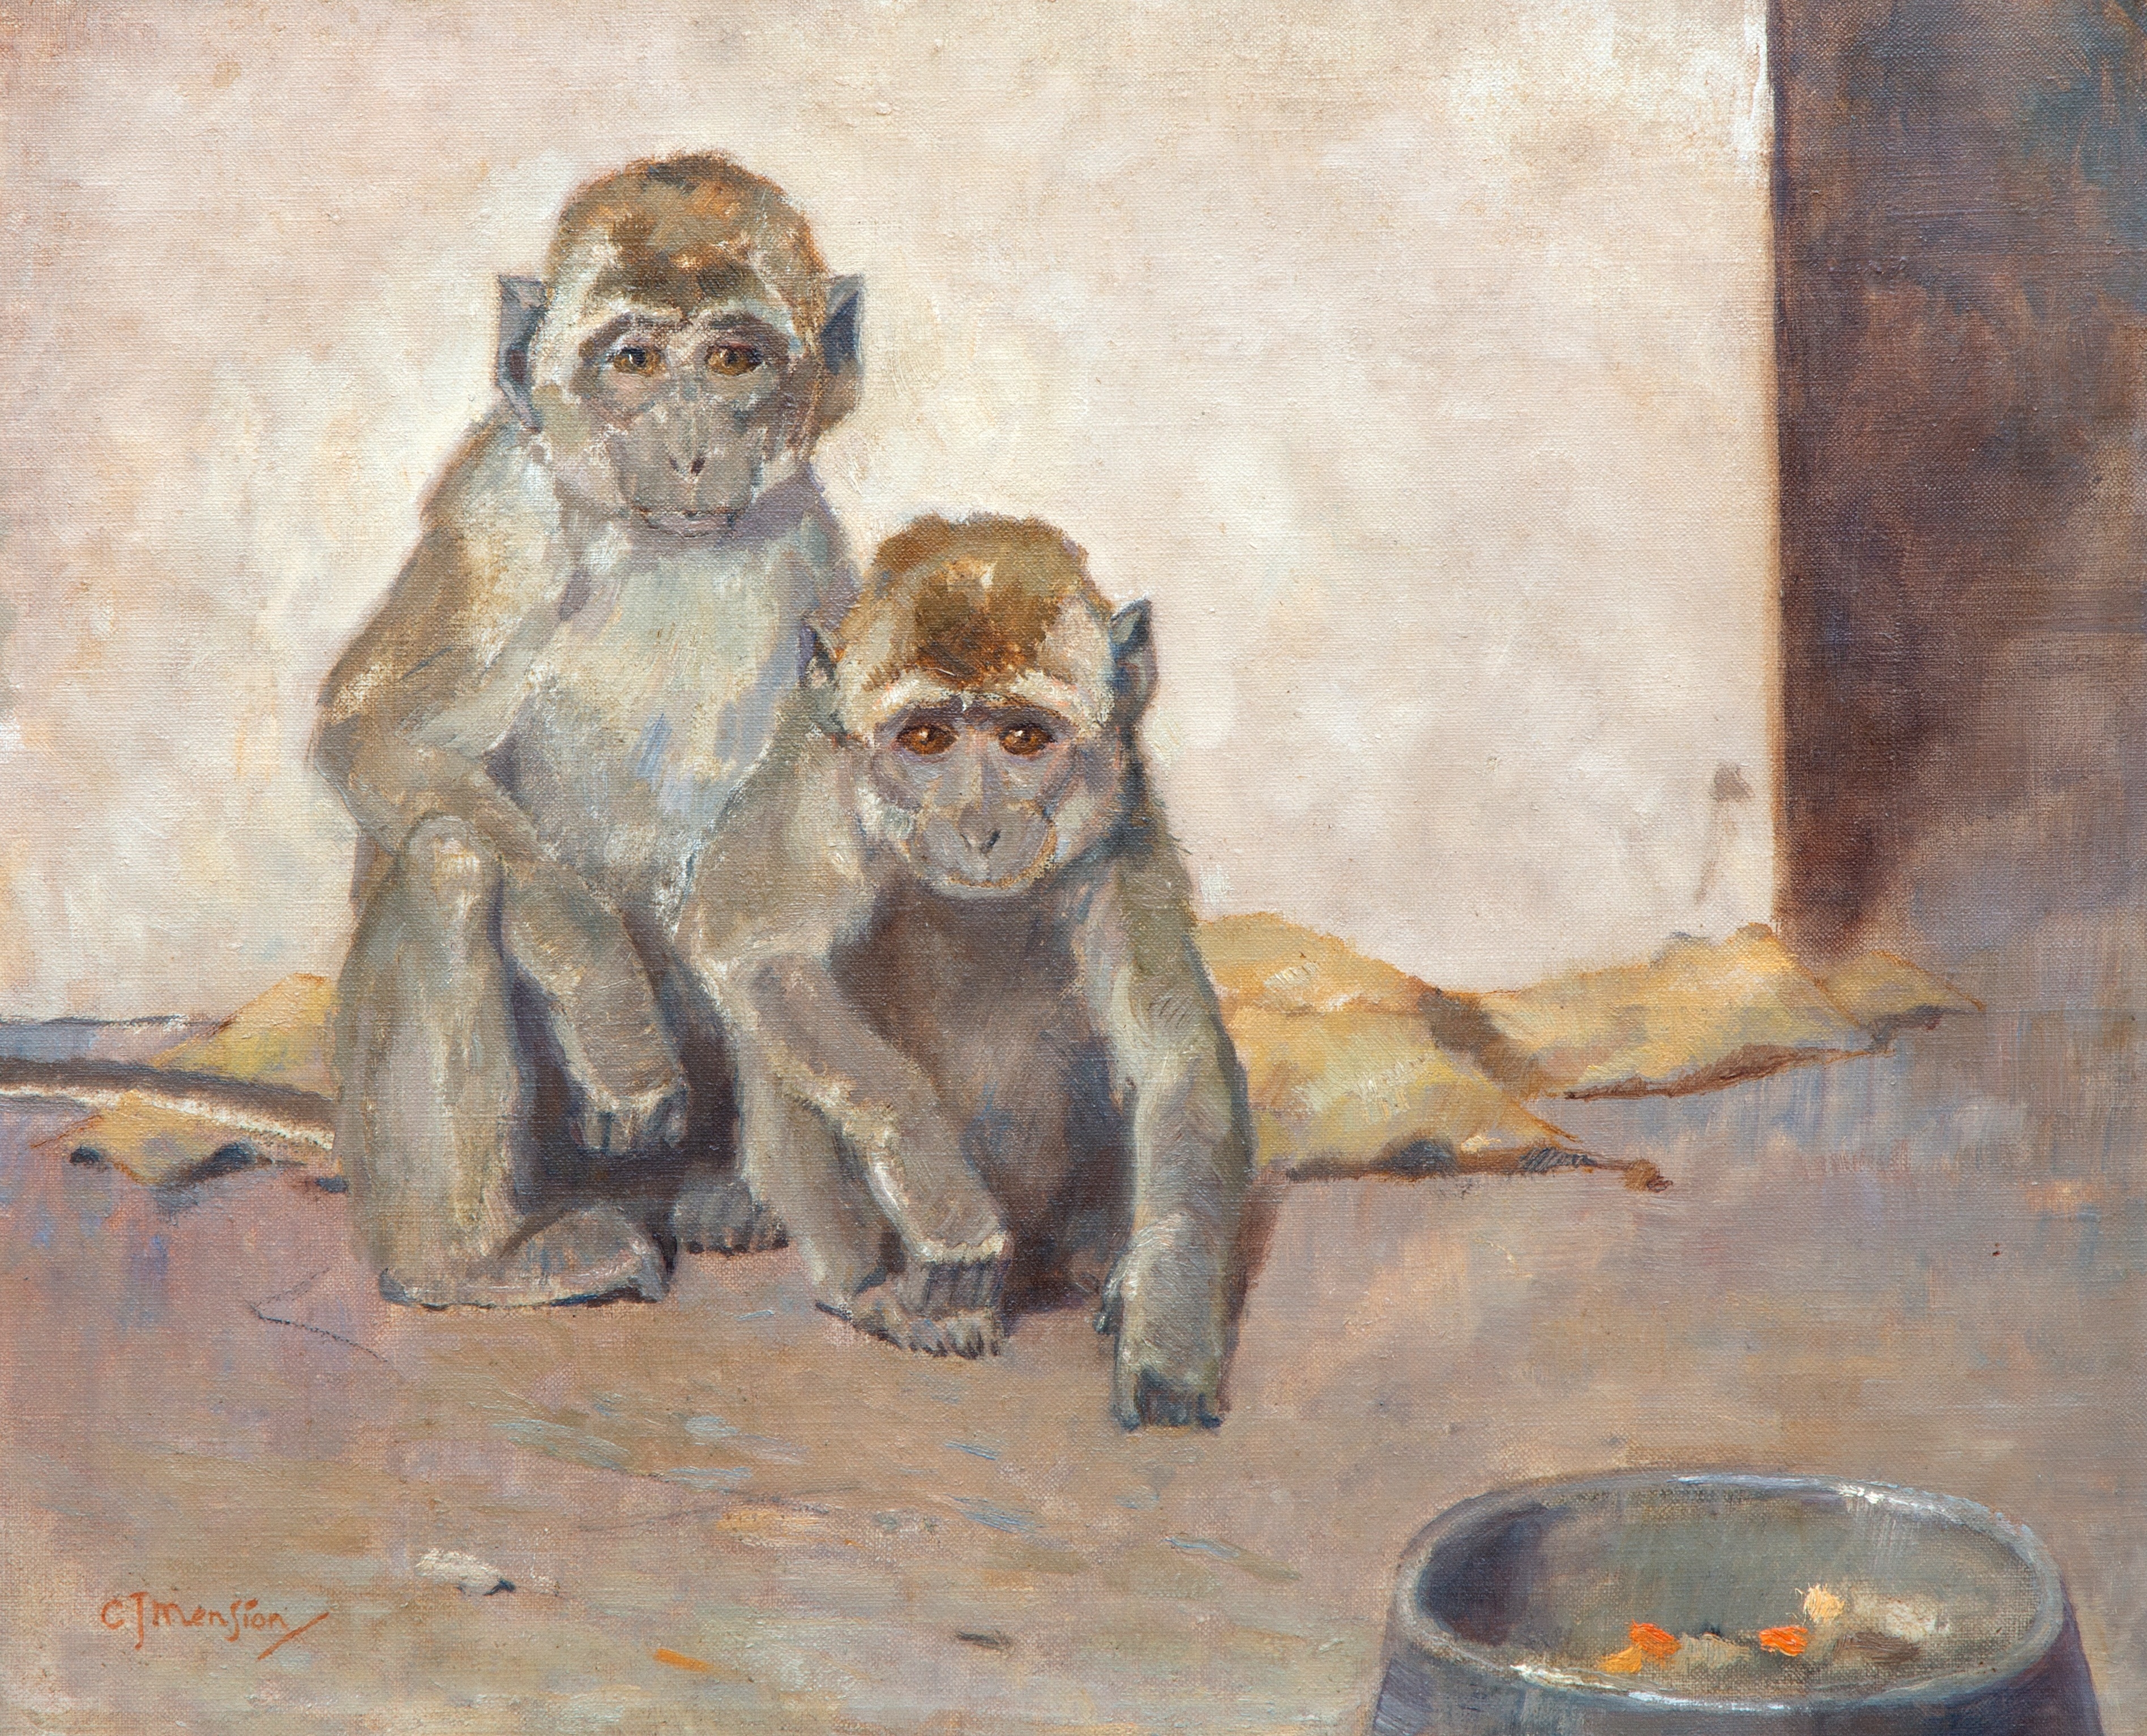 Two monkeys by Cornelis Jan Mension